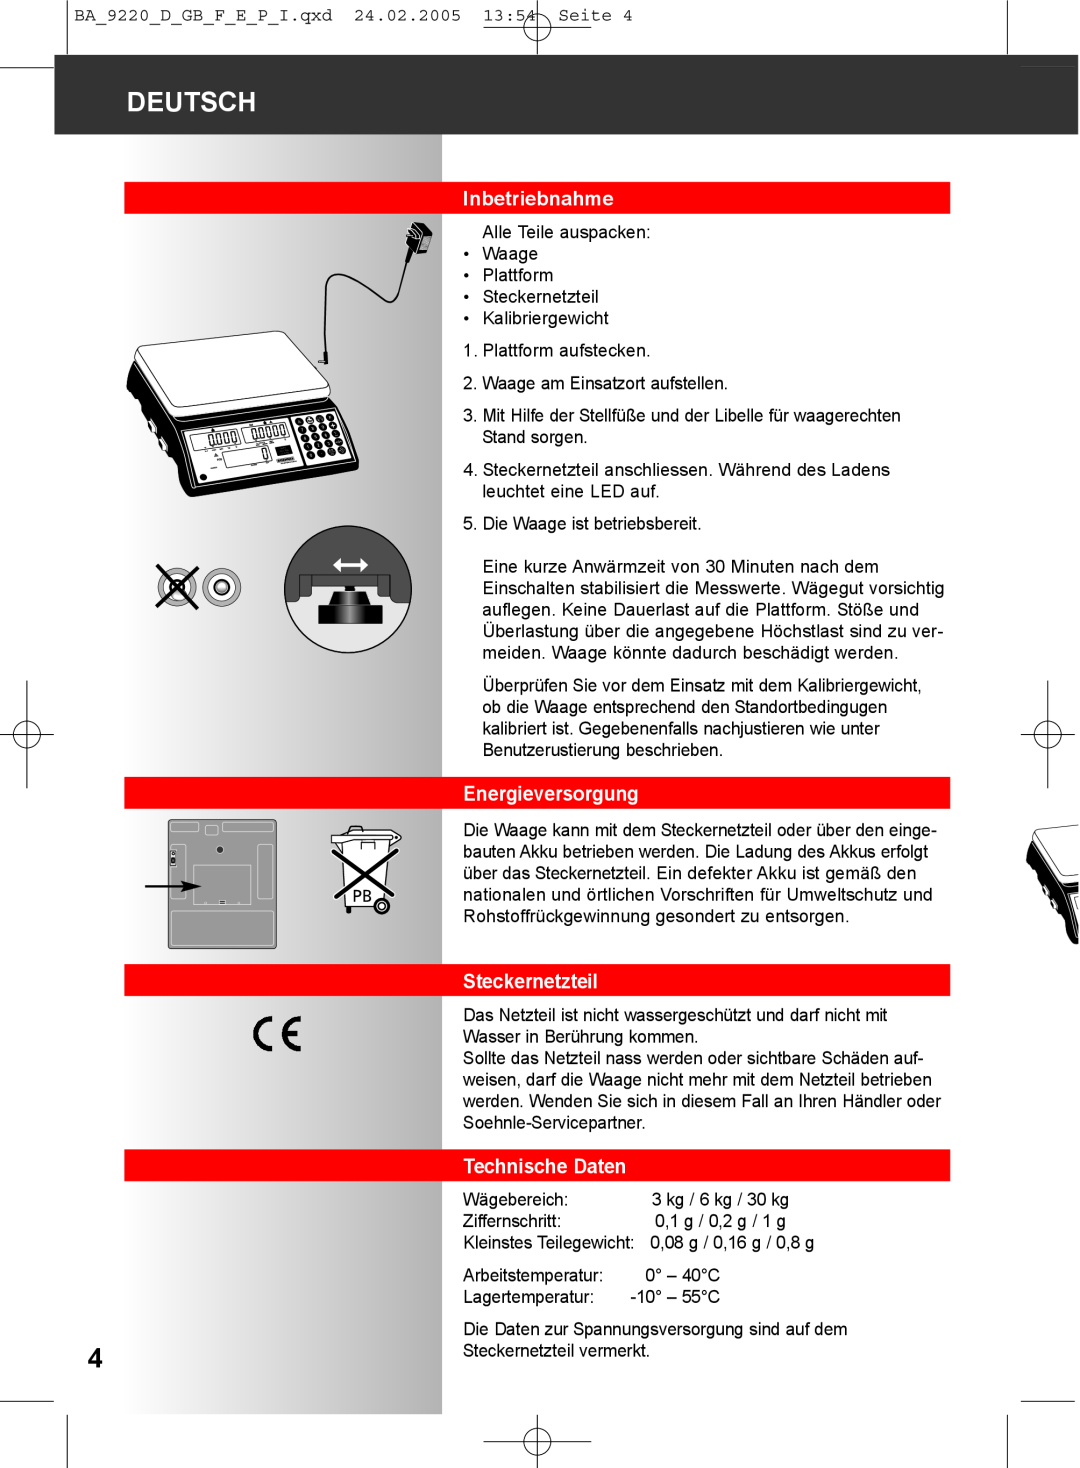 Soehnle 9220 manual Inbetriebnahme, Energieversorgung, Steckernetzteil, Deutsch, Technische Daten 